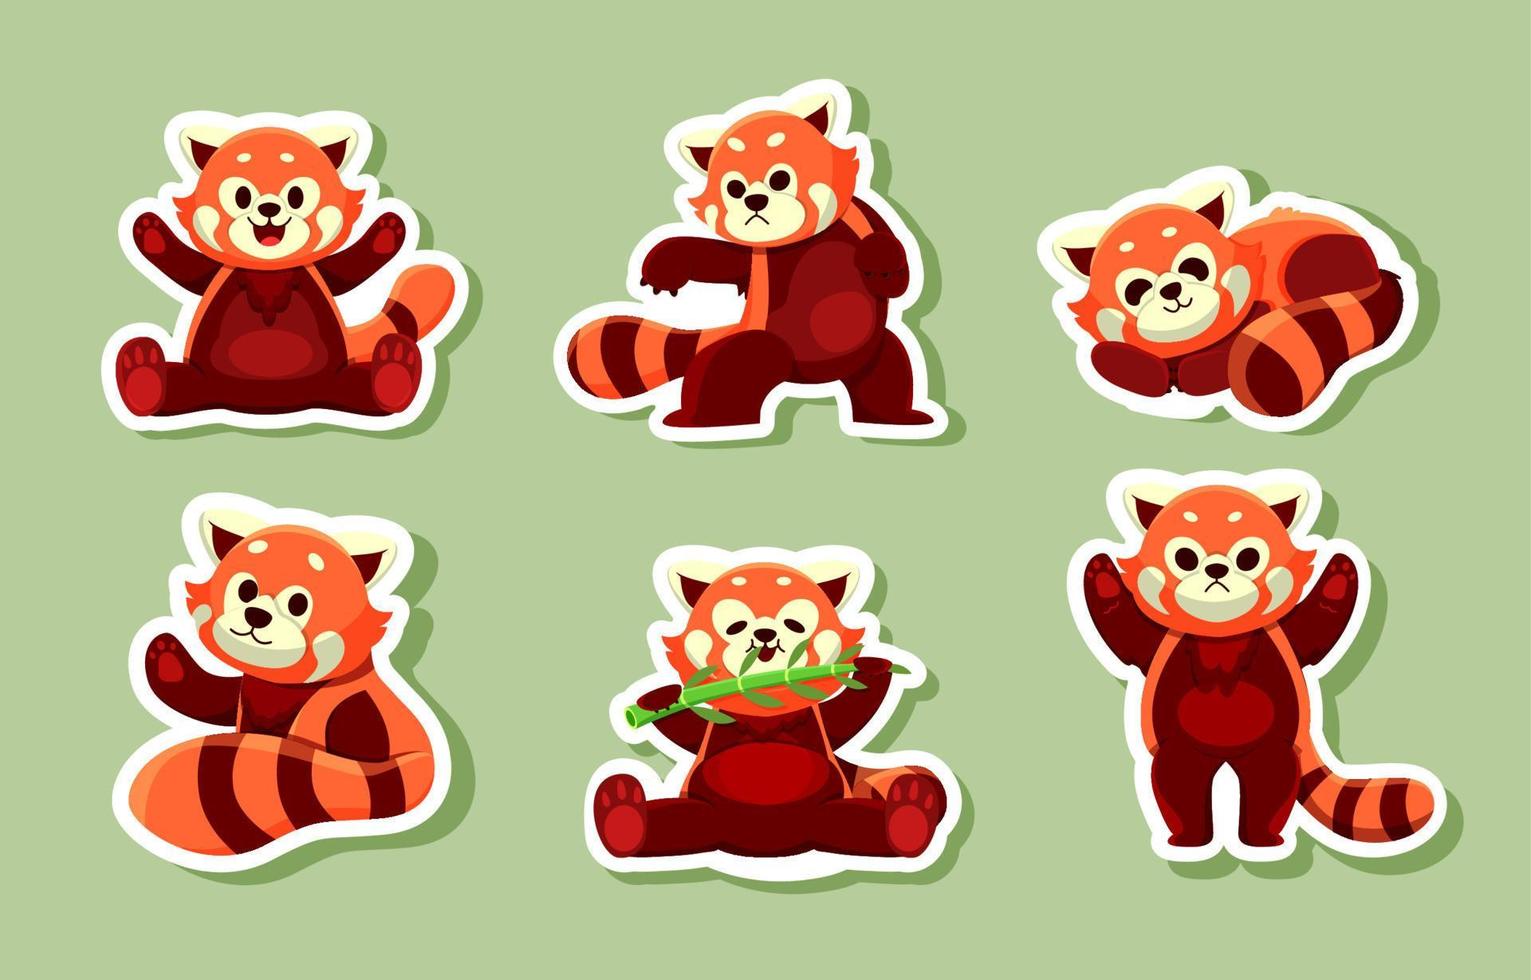 söt röd panda i verkan klistermärke vektor